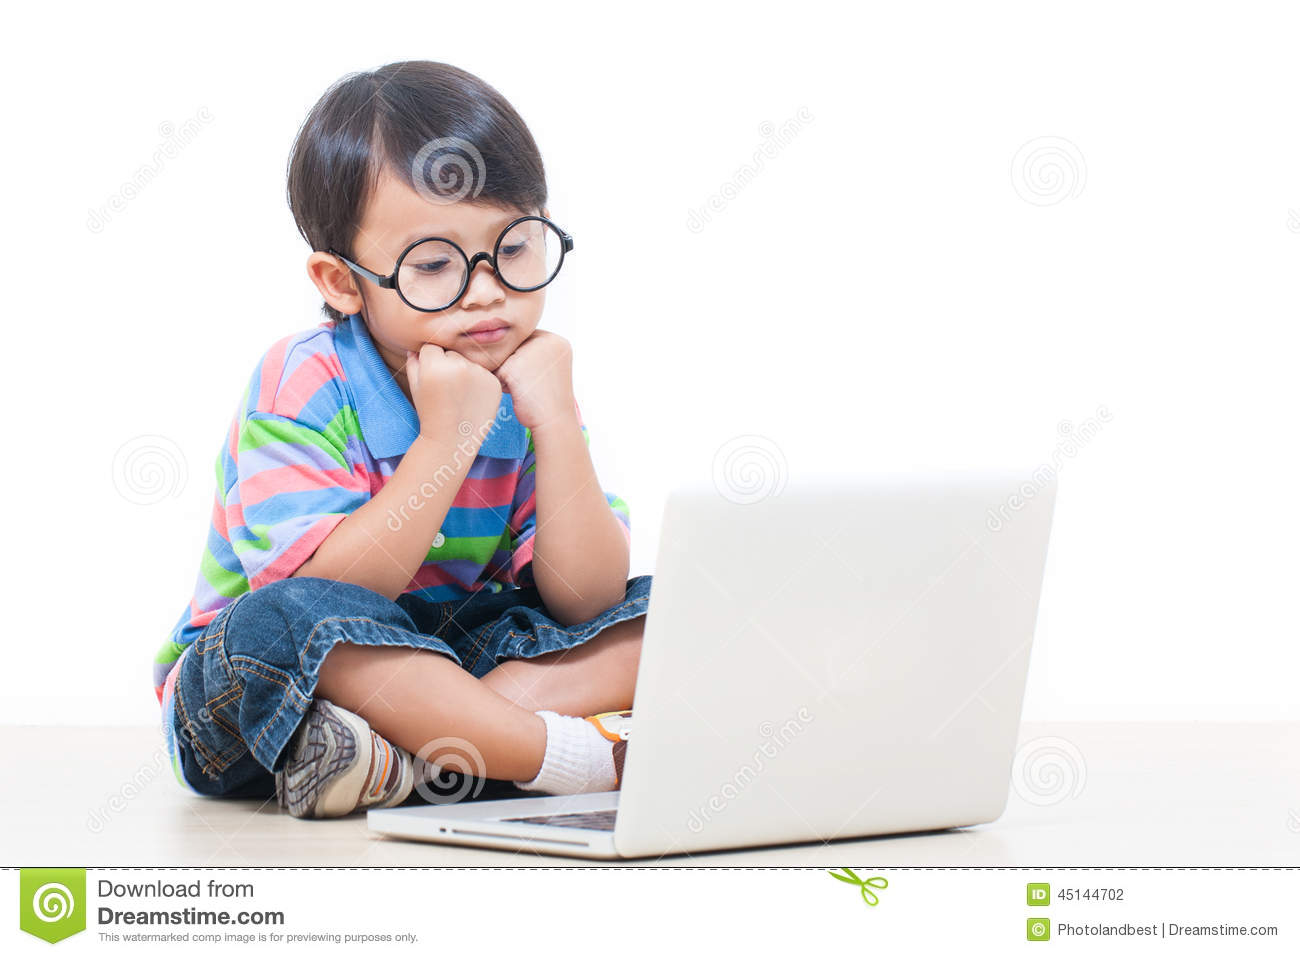 A Cute Boy Using a Computer